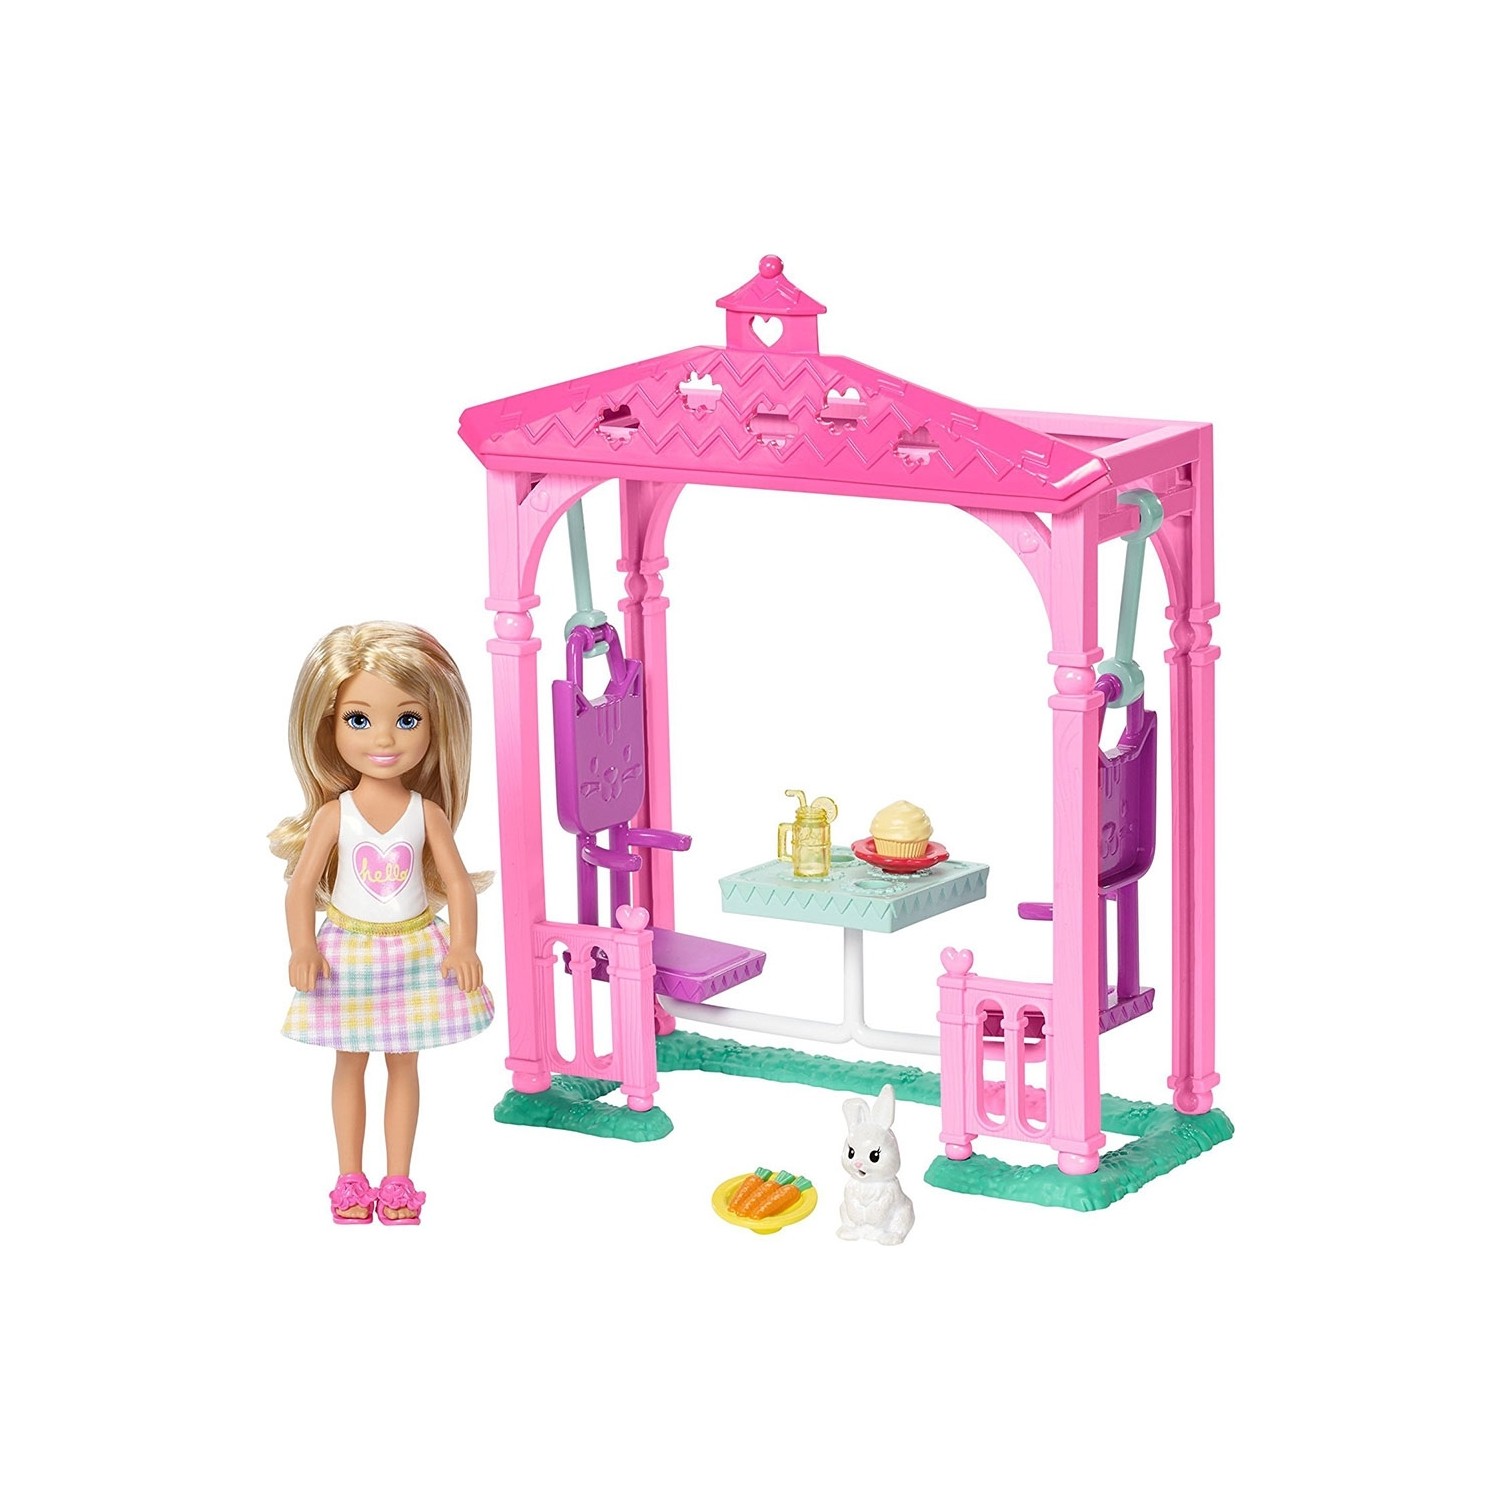 Игровой набор Barbie Челси для пикника FDB34 игровой набор для пикника barbie chelsea fdb32 ghv75